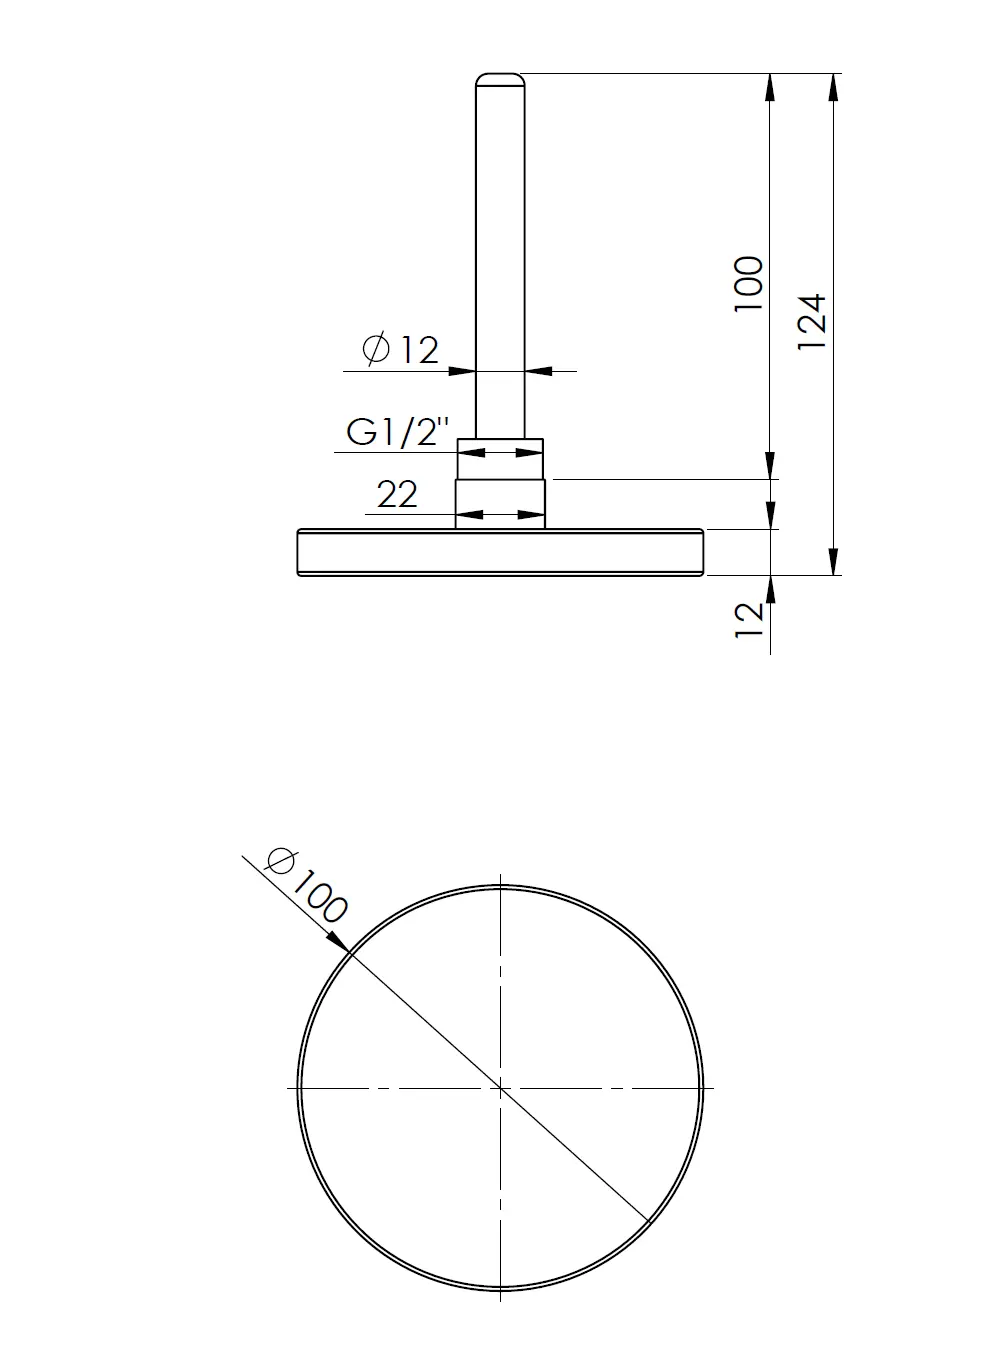 Termometr bimetaliczny BiTh 100, fi100 mm, -20÷60°C, L 100 mm, G1/2", ax, kl. 2 - budowa